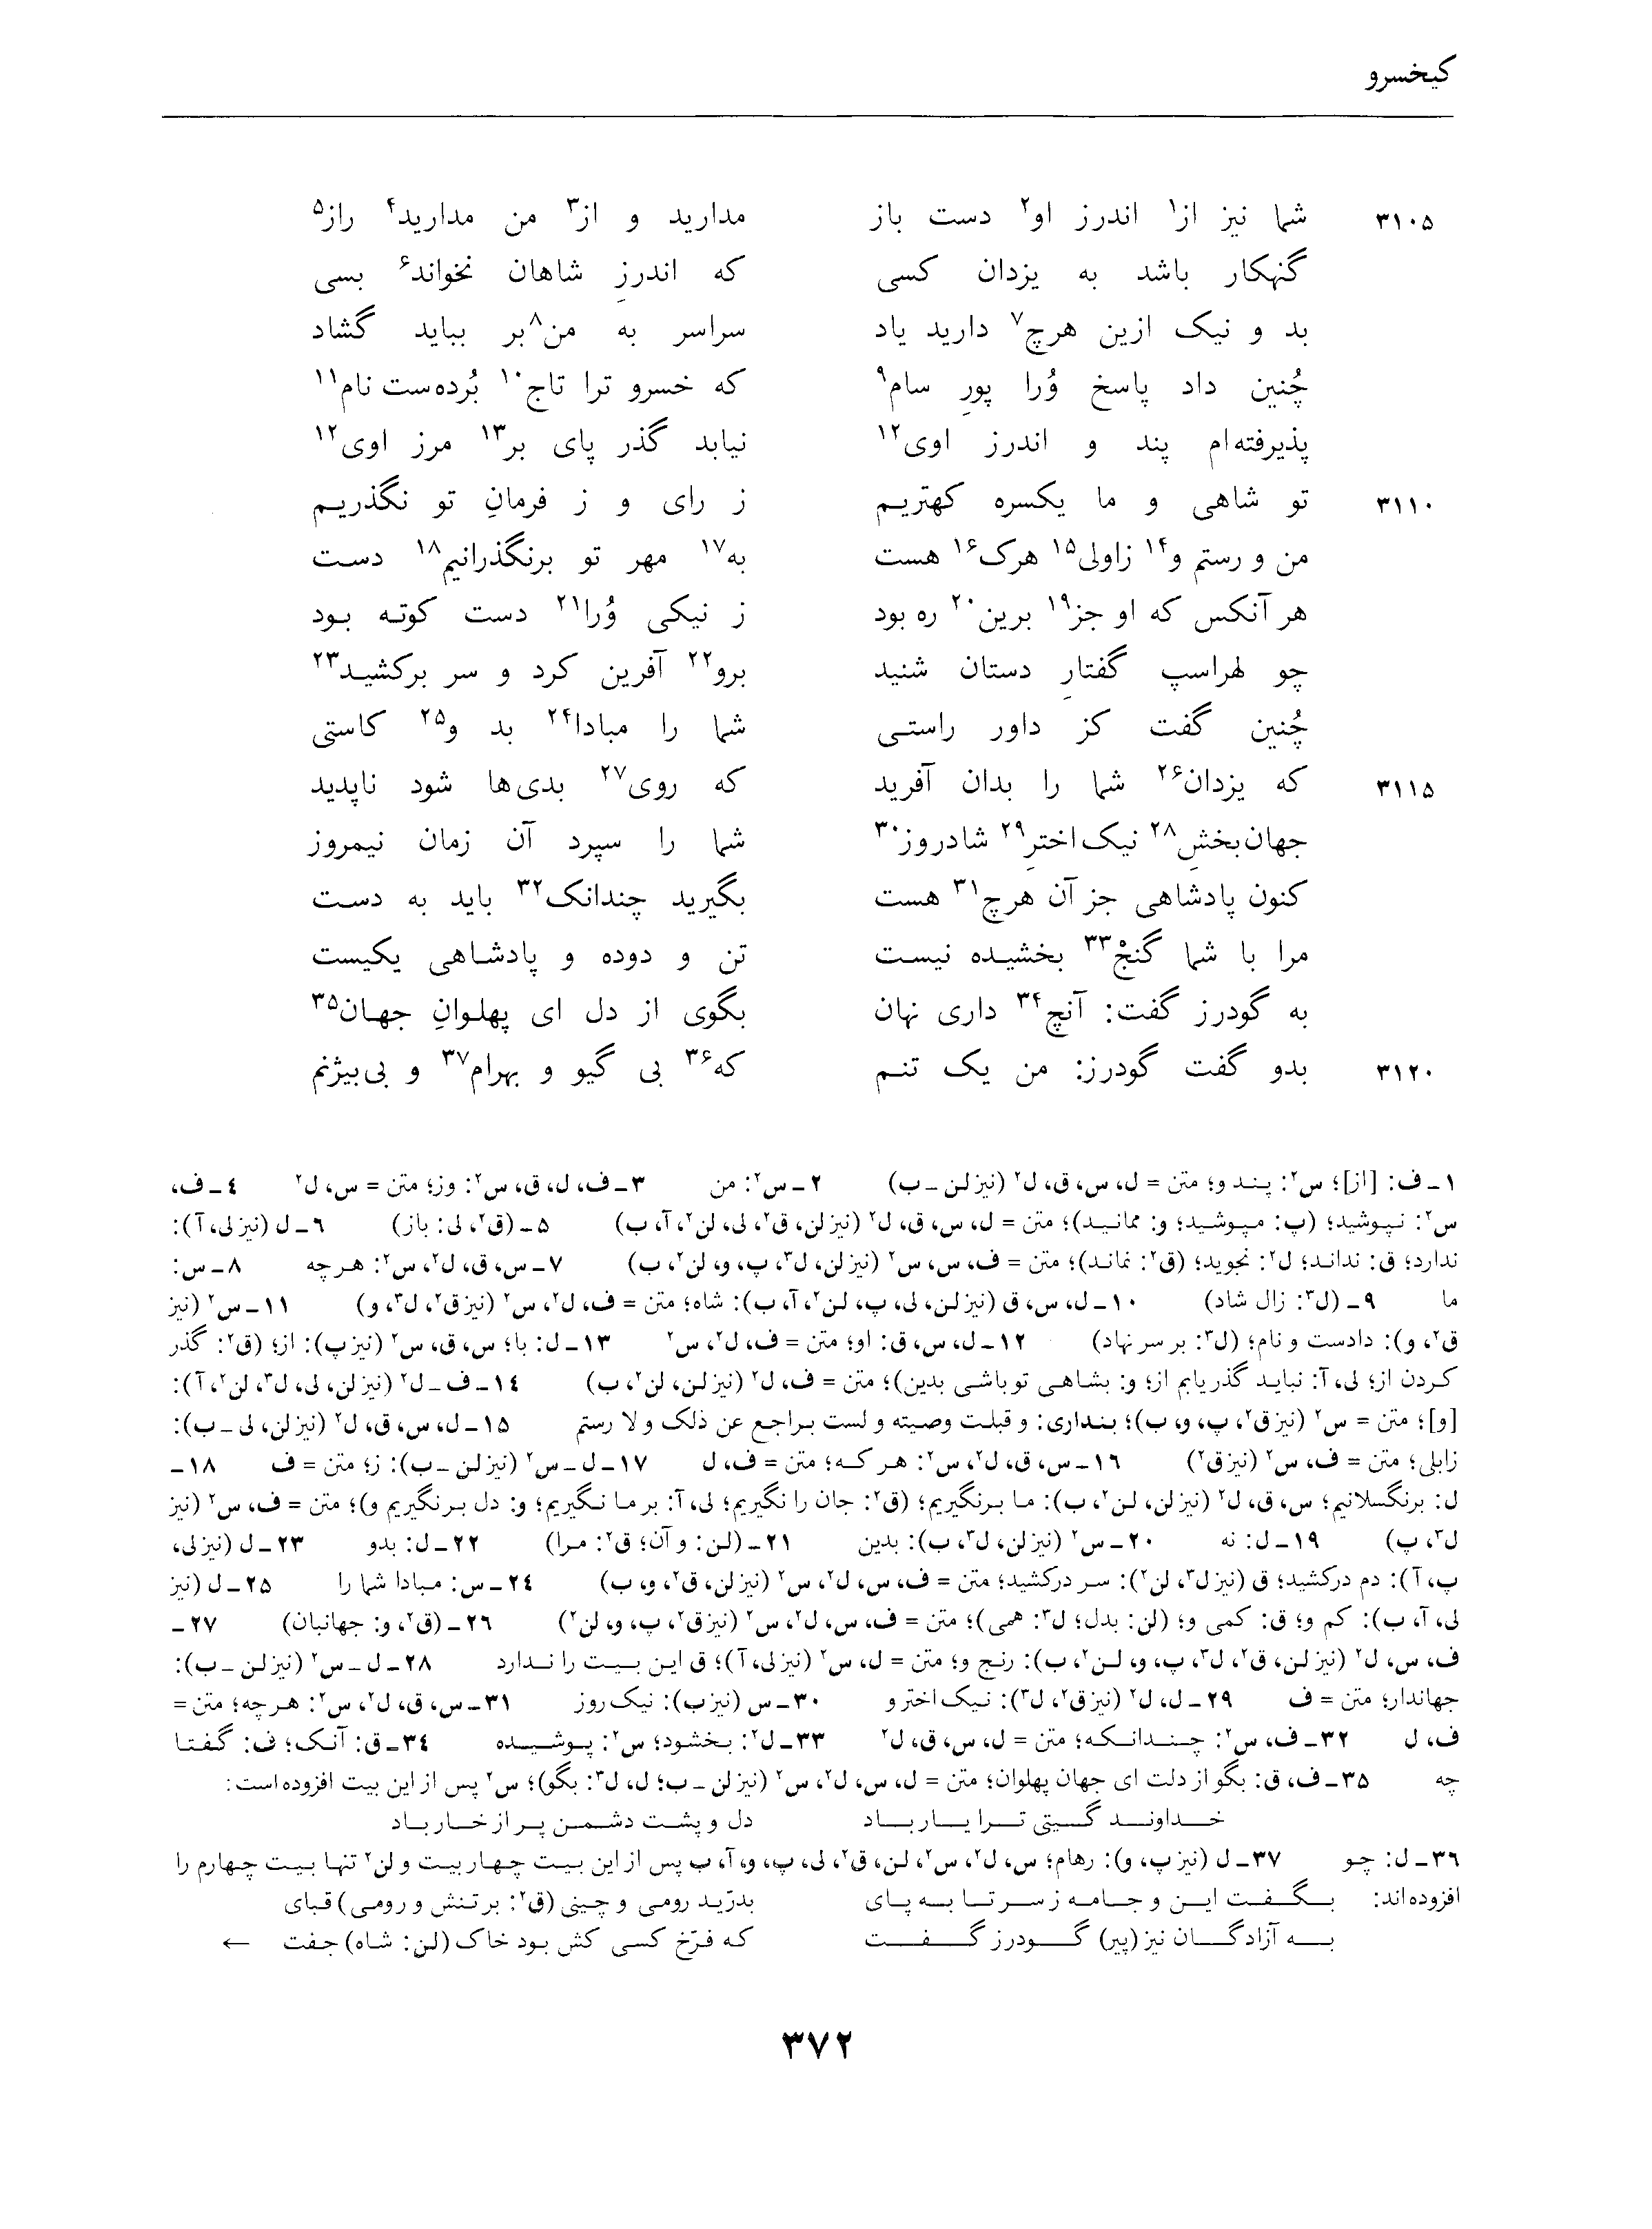 vol. 4, p. 372